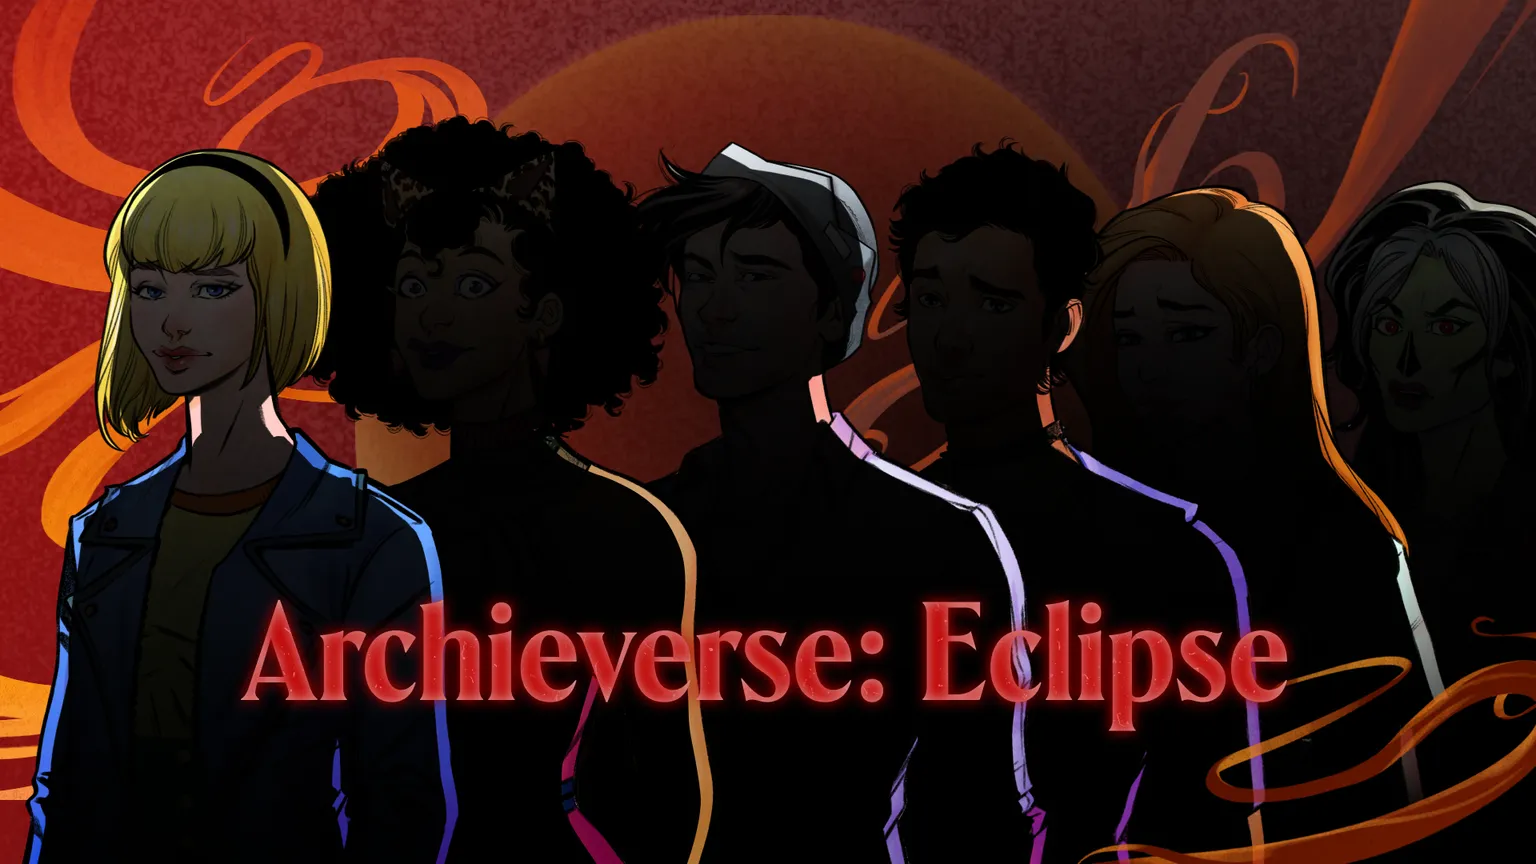 Un Archieverso en NFT: Imagen del teaser de Eclipse de Archie Comics